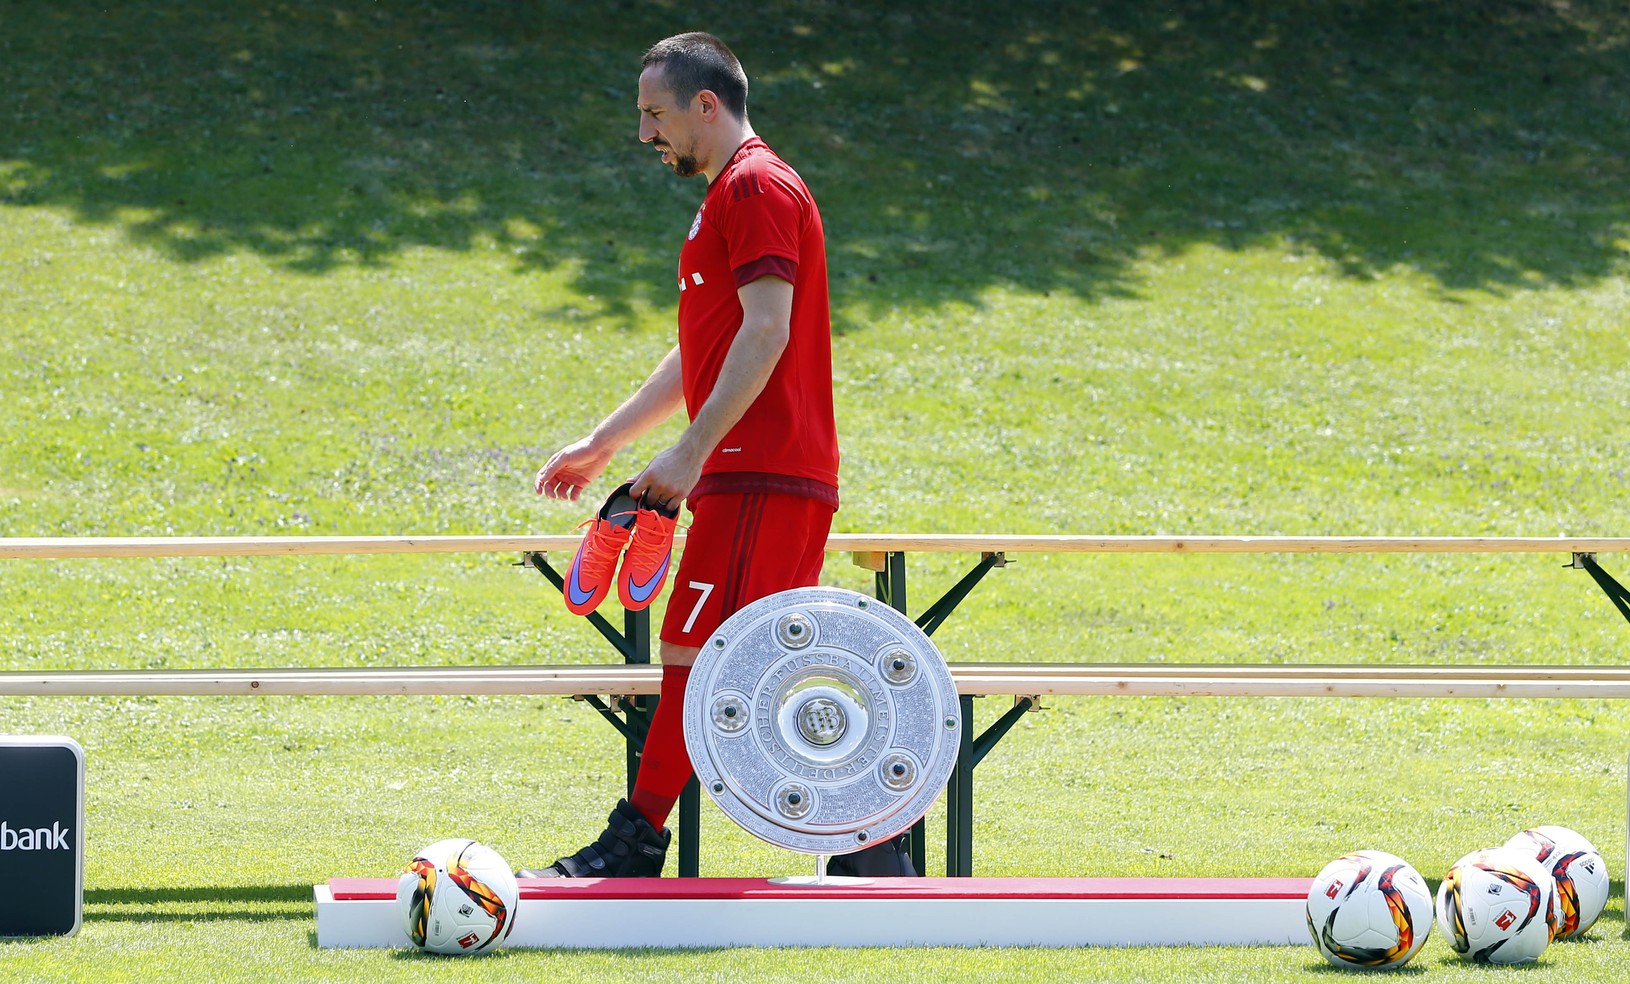 Franck Ribéry